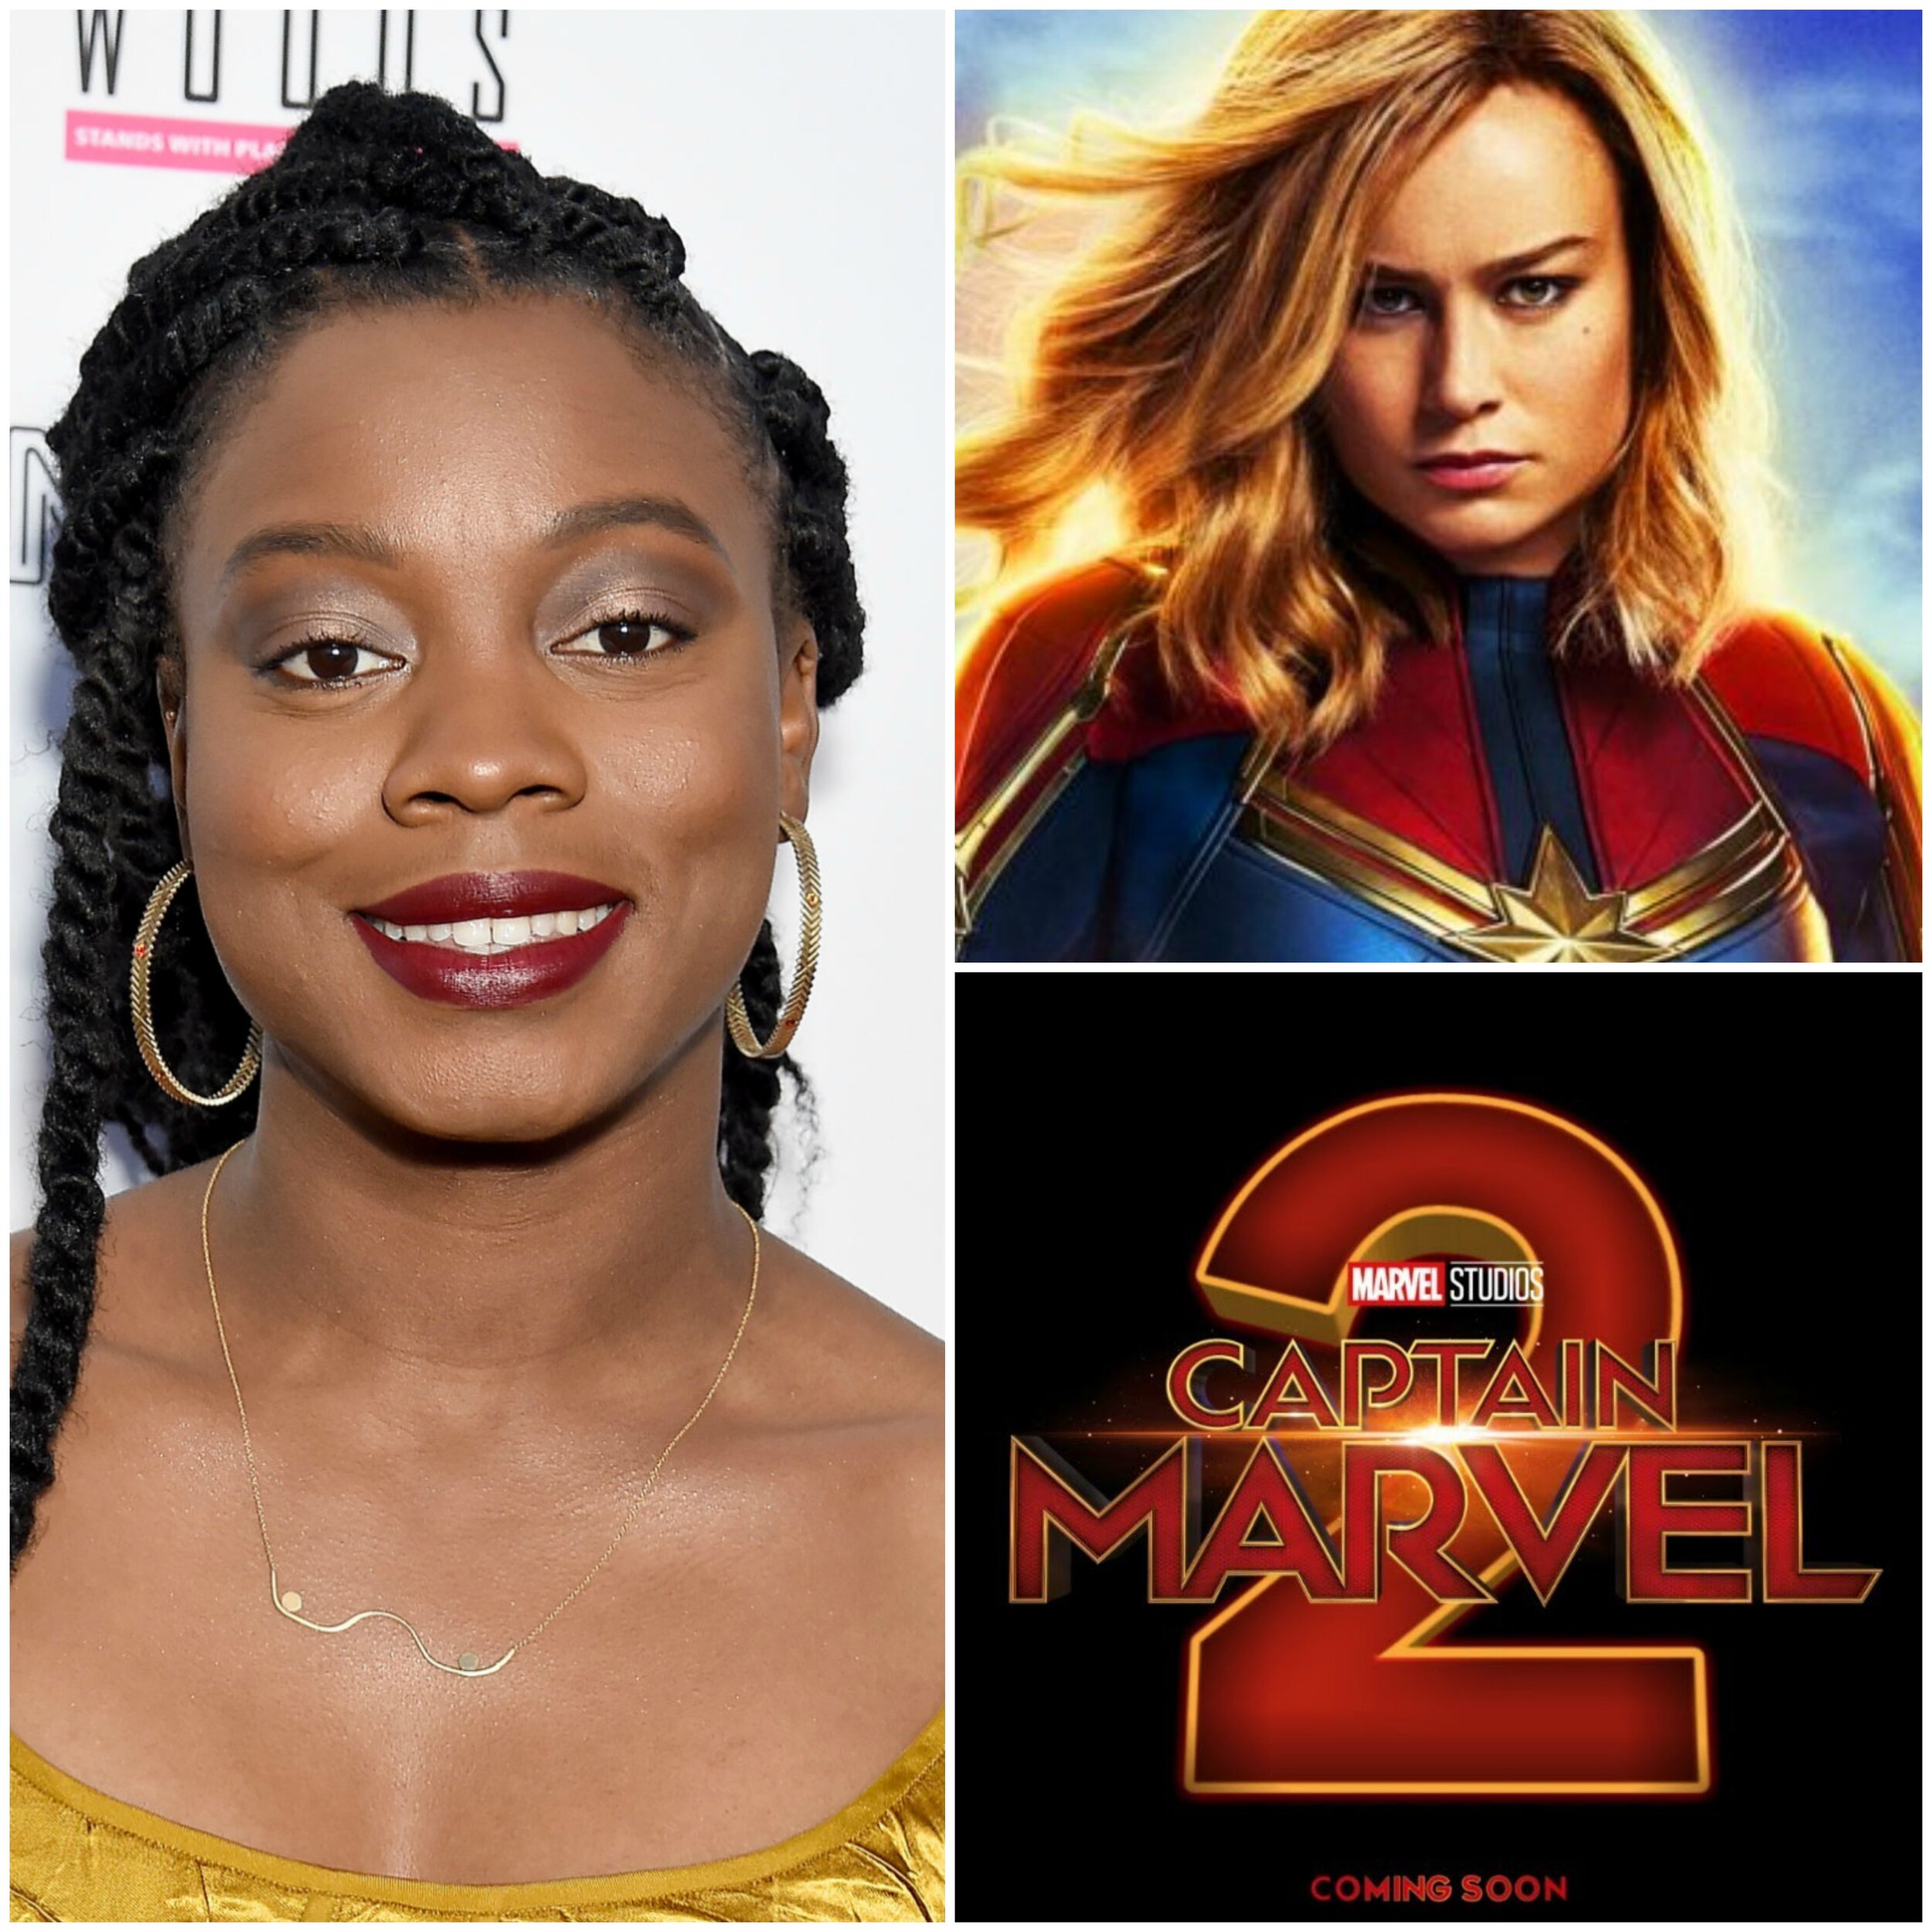 Captain Marvel 2 Announces 5 Main Cast Members